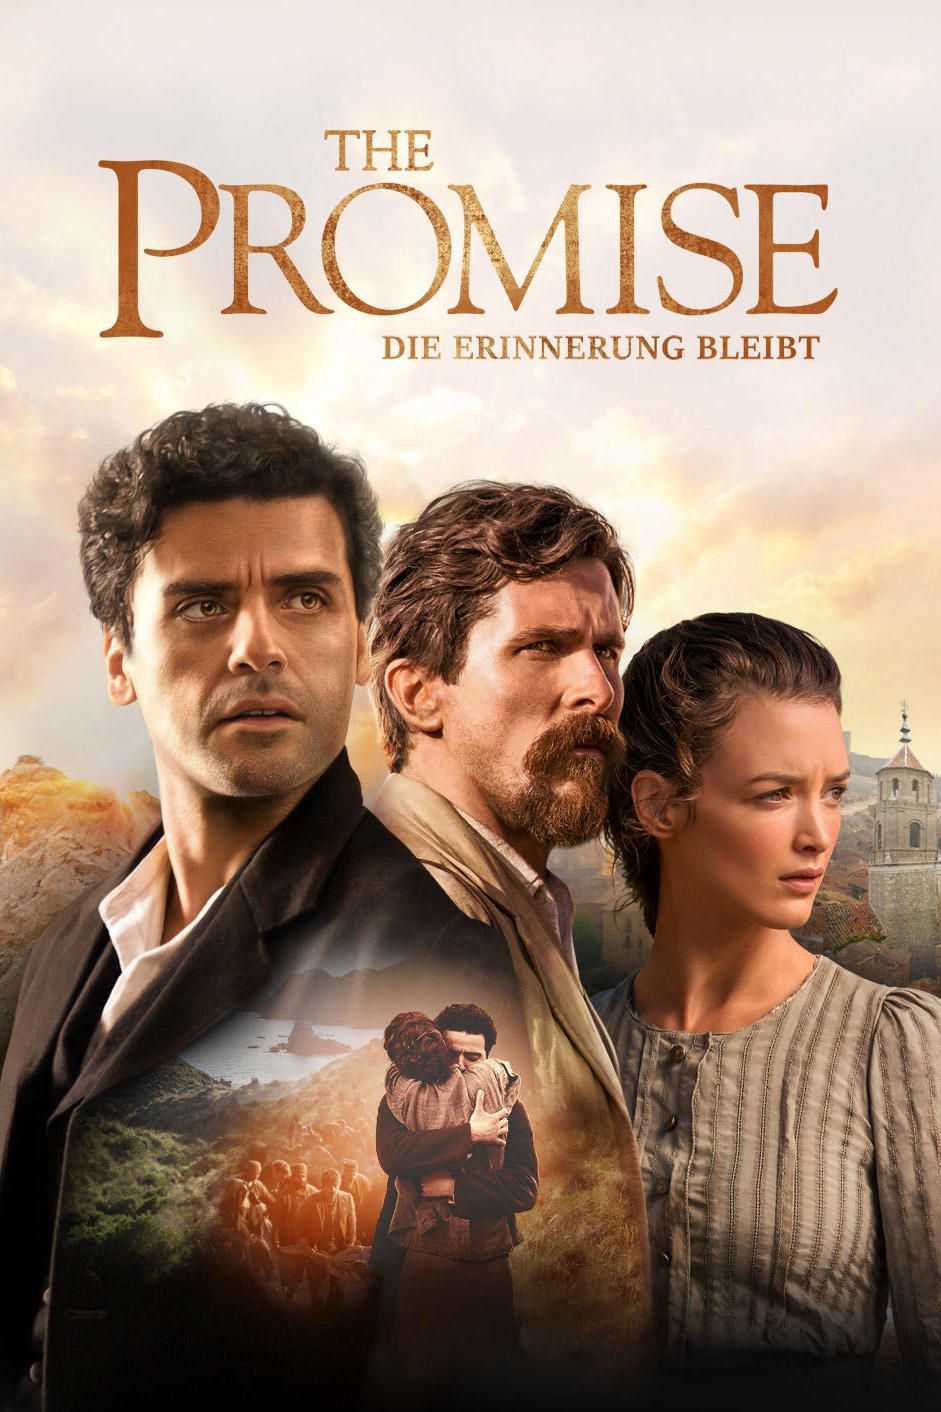 فیلم وعده The Promise 2016 دانلود و تماشای آنلاین